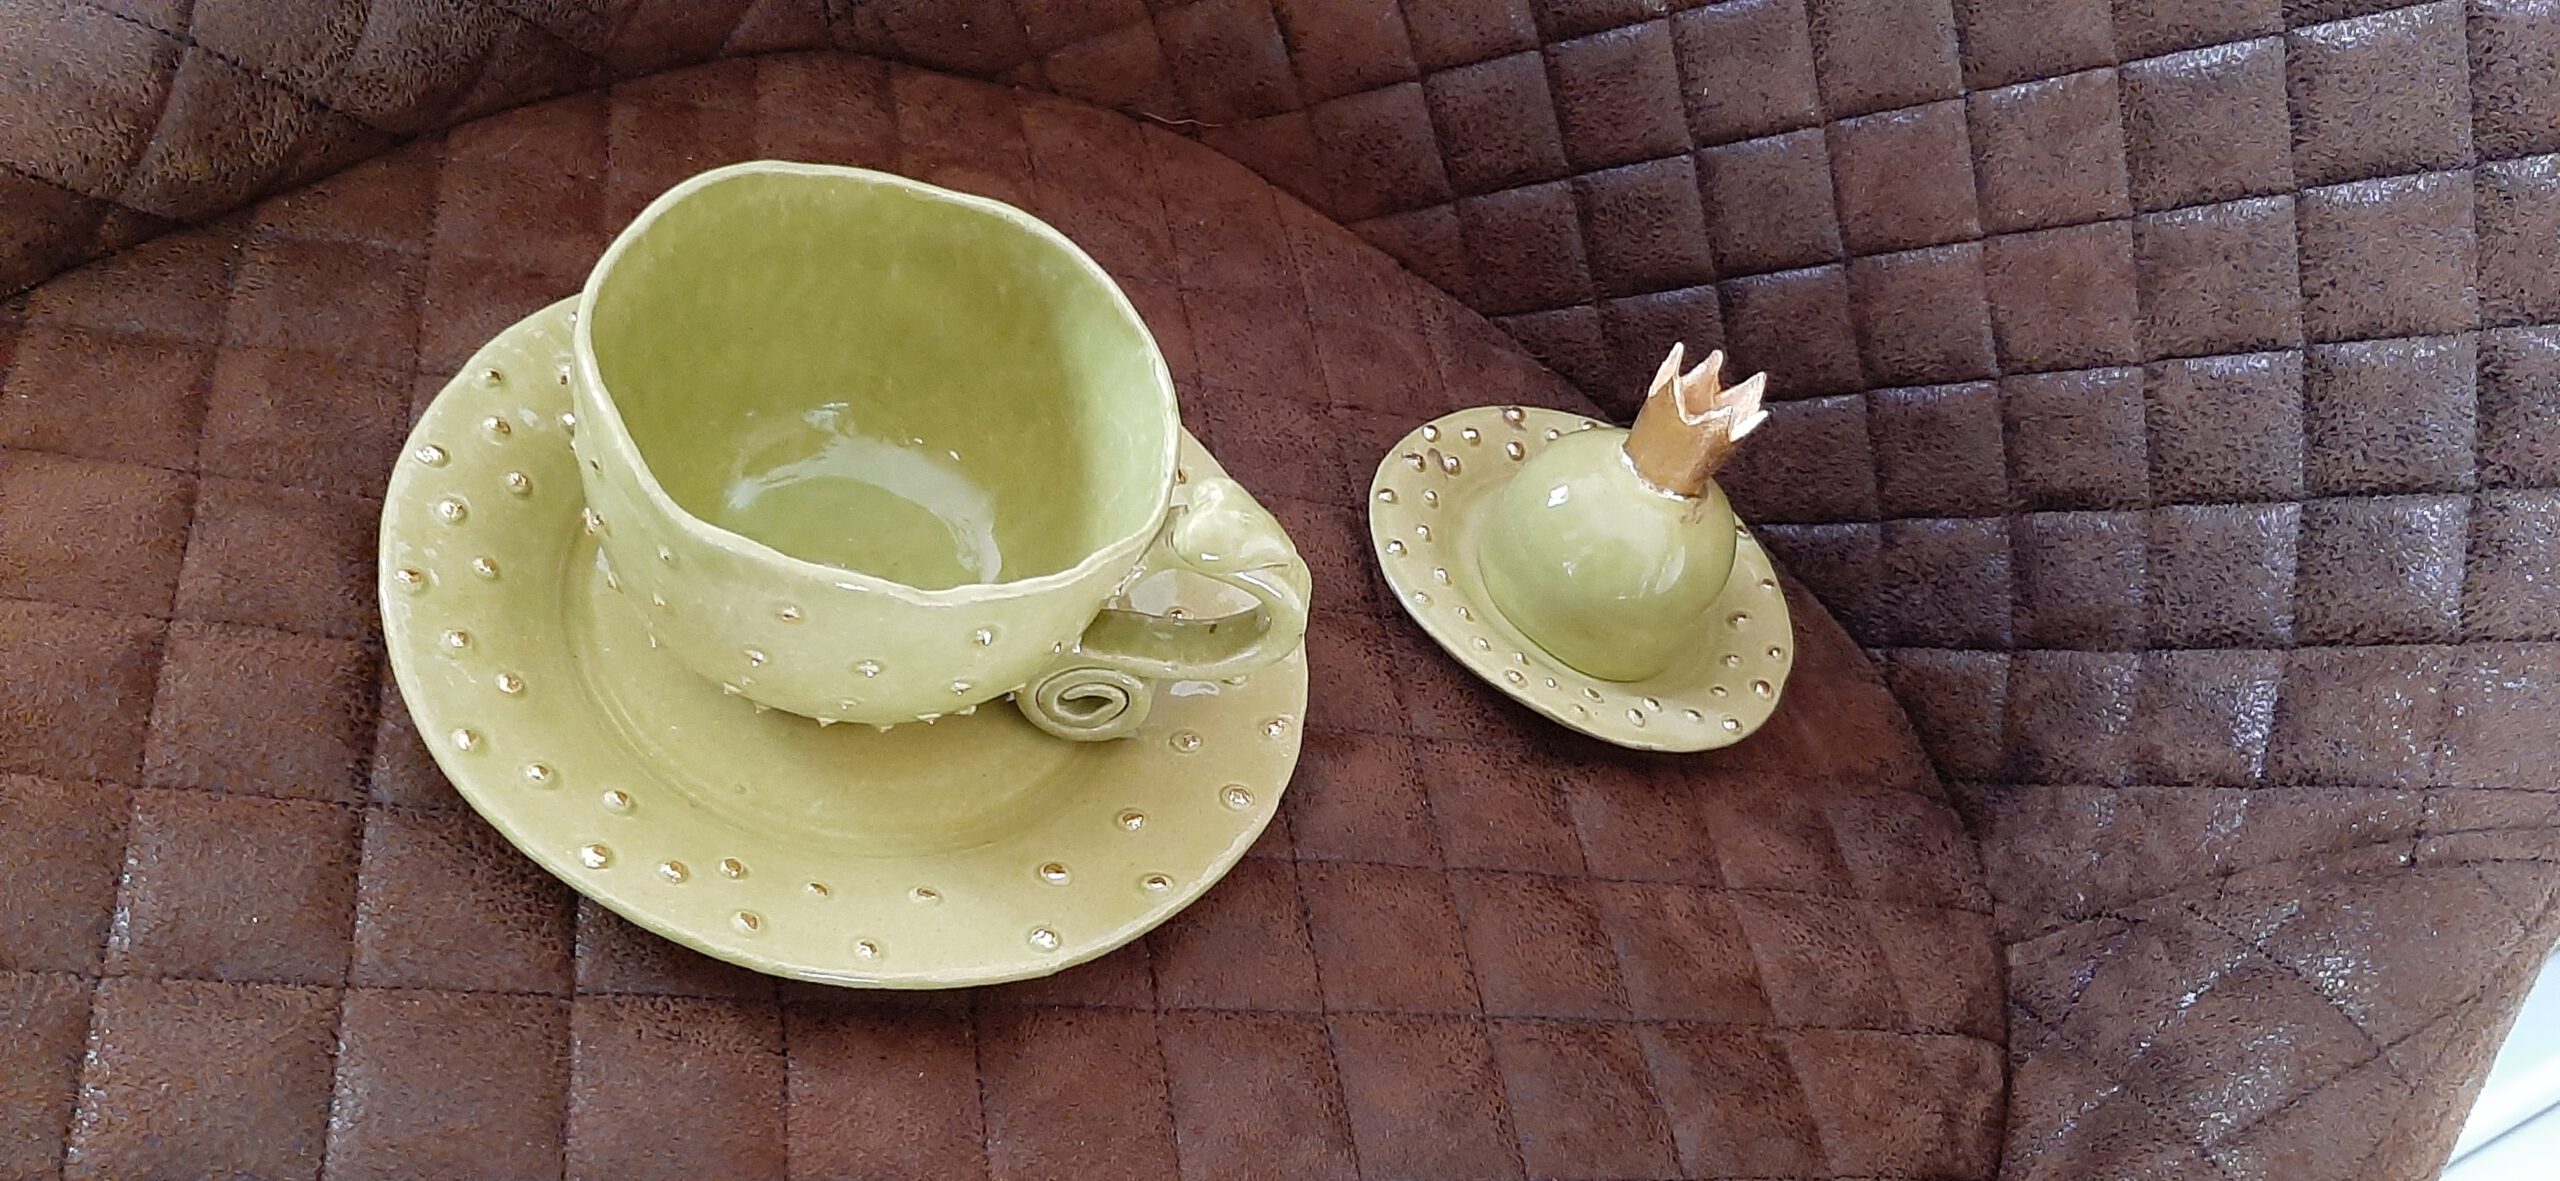 Tasse mit Teller, frühlingsgrüne Glasur, Keramik KeraMik von Herz zu Herz, Augsburg, Handarbeit, Clay Artist, Unikate